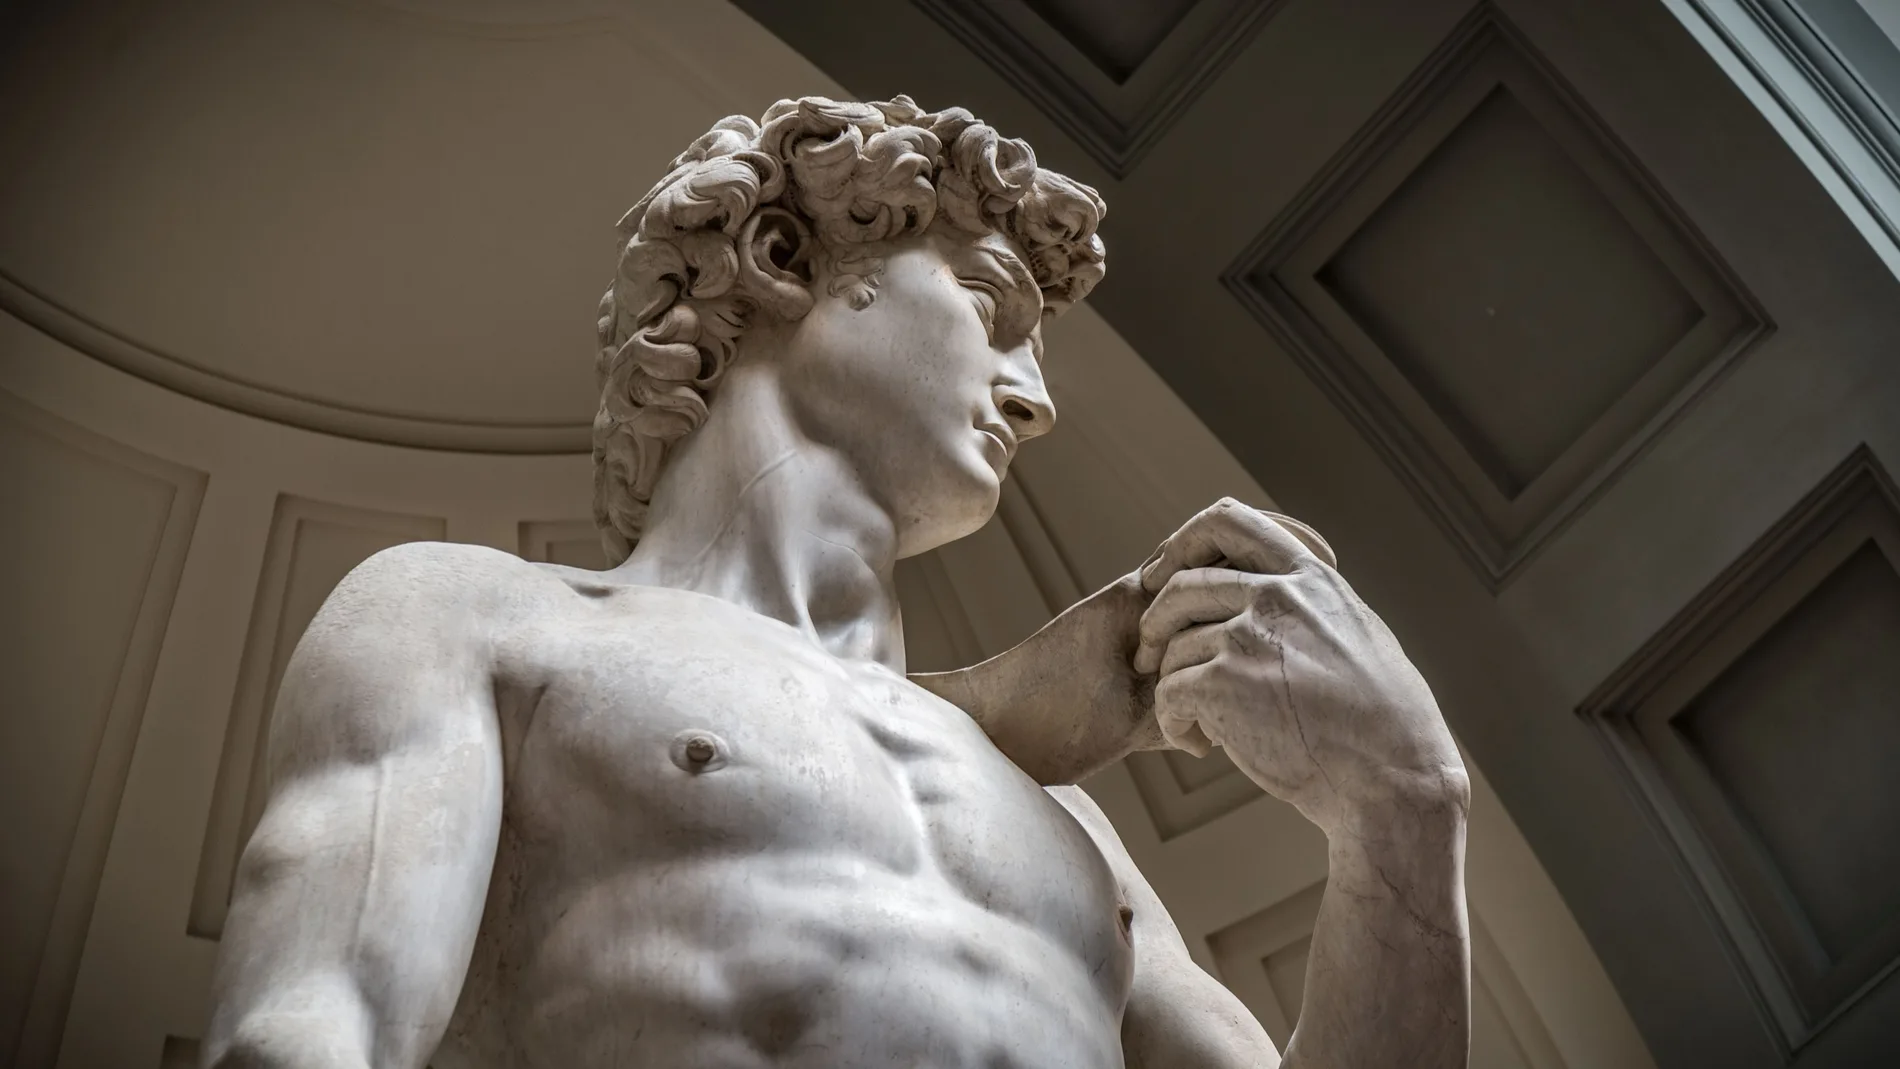 Detalle del «David» de Miguel Ángel, donde puede apreciarse la vena yugular que el artista talló en su escultura